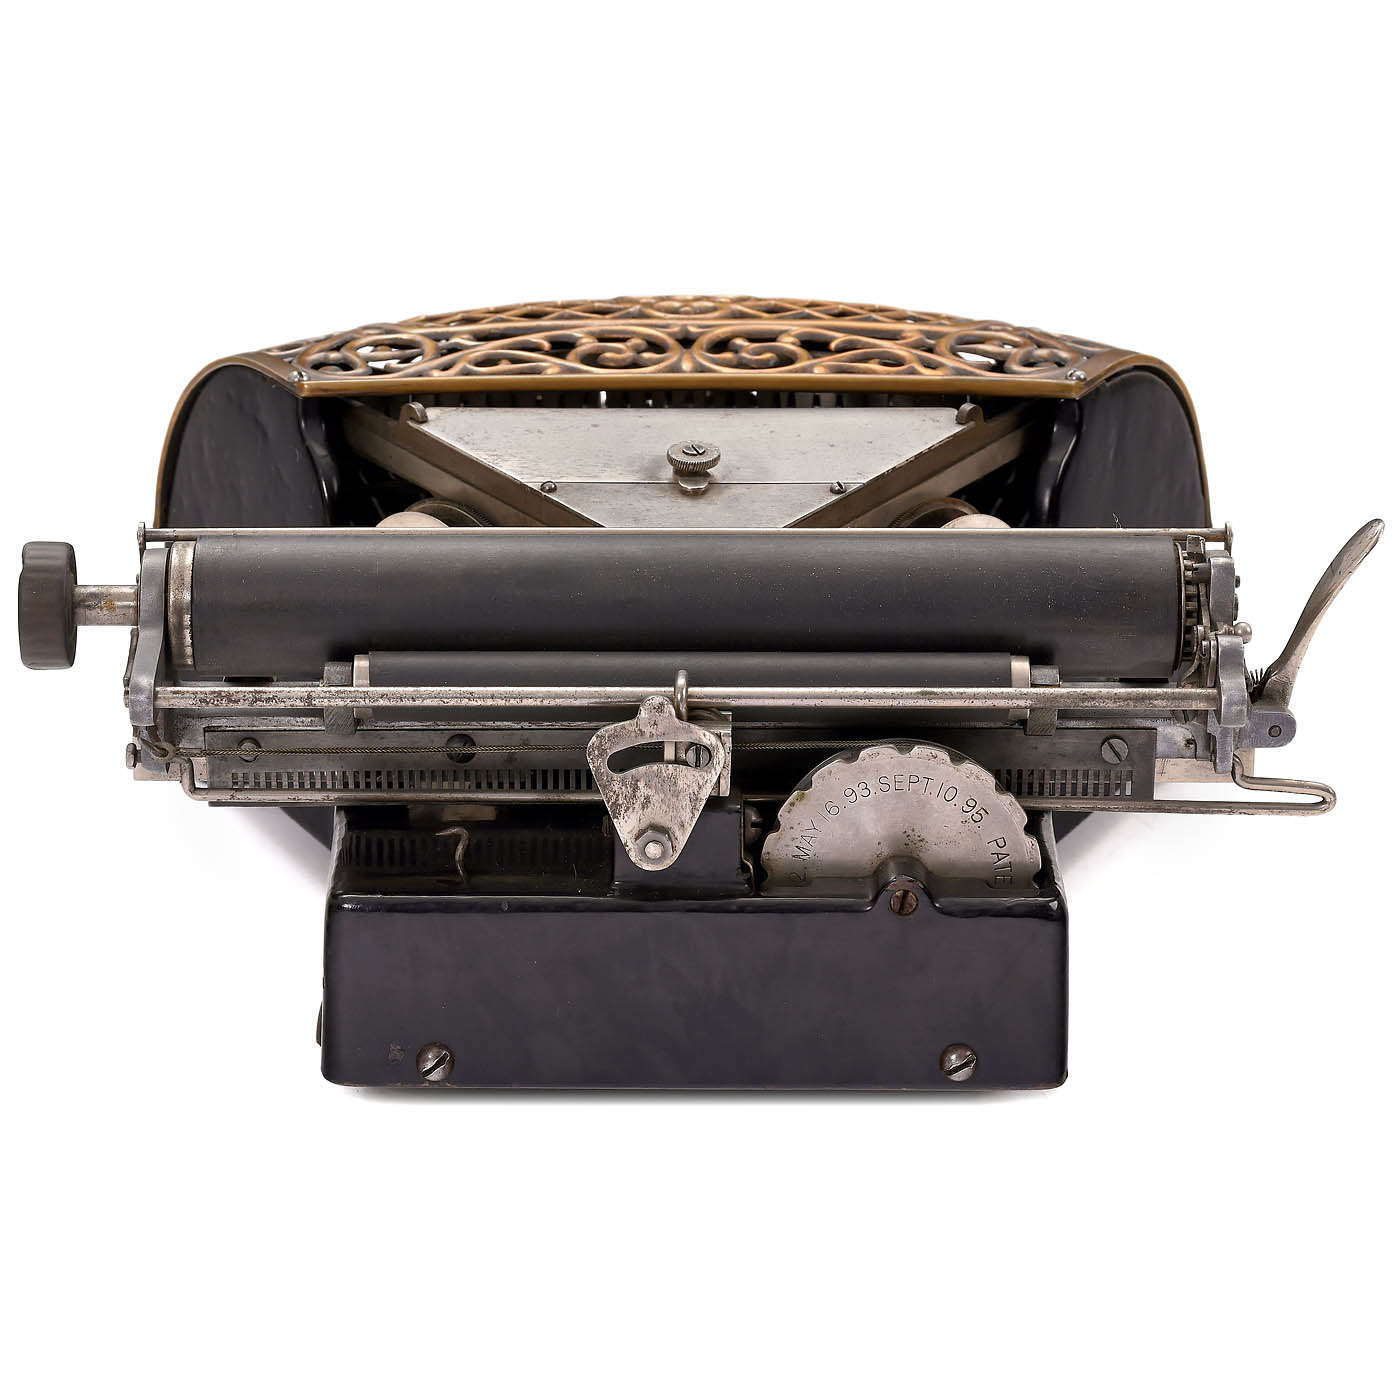 Rare Ford Typewriter, 1895 - Image 5 of 7